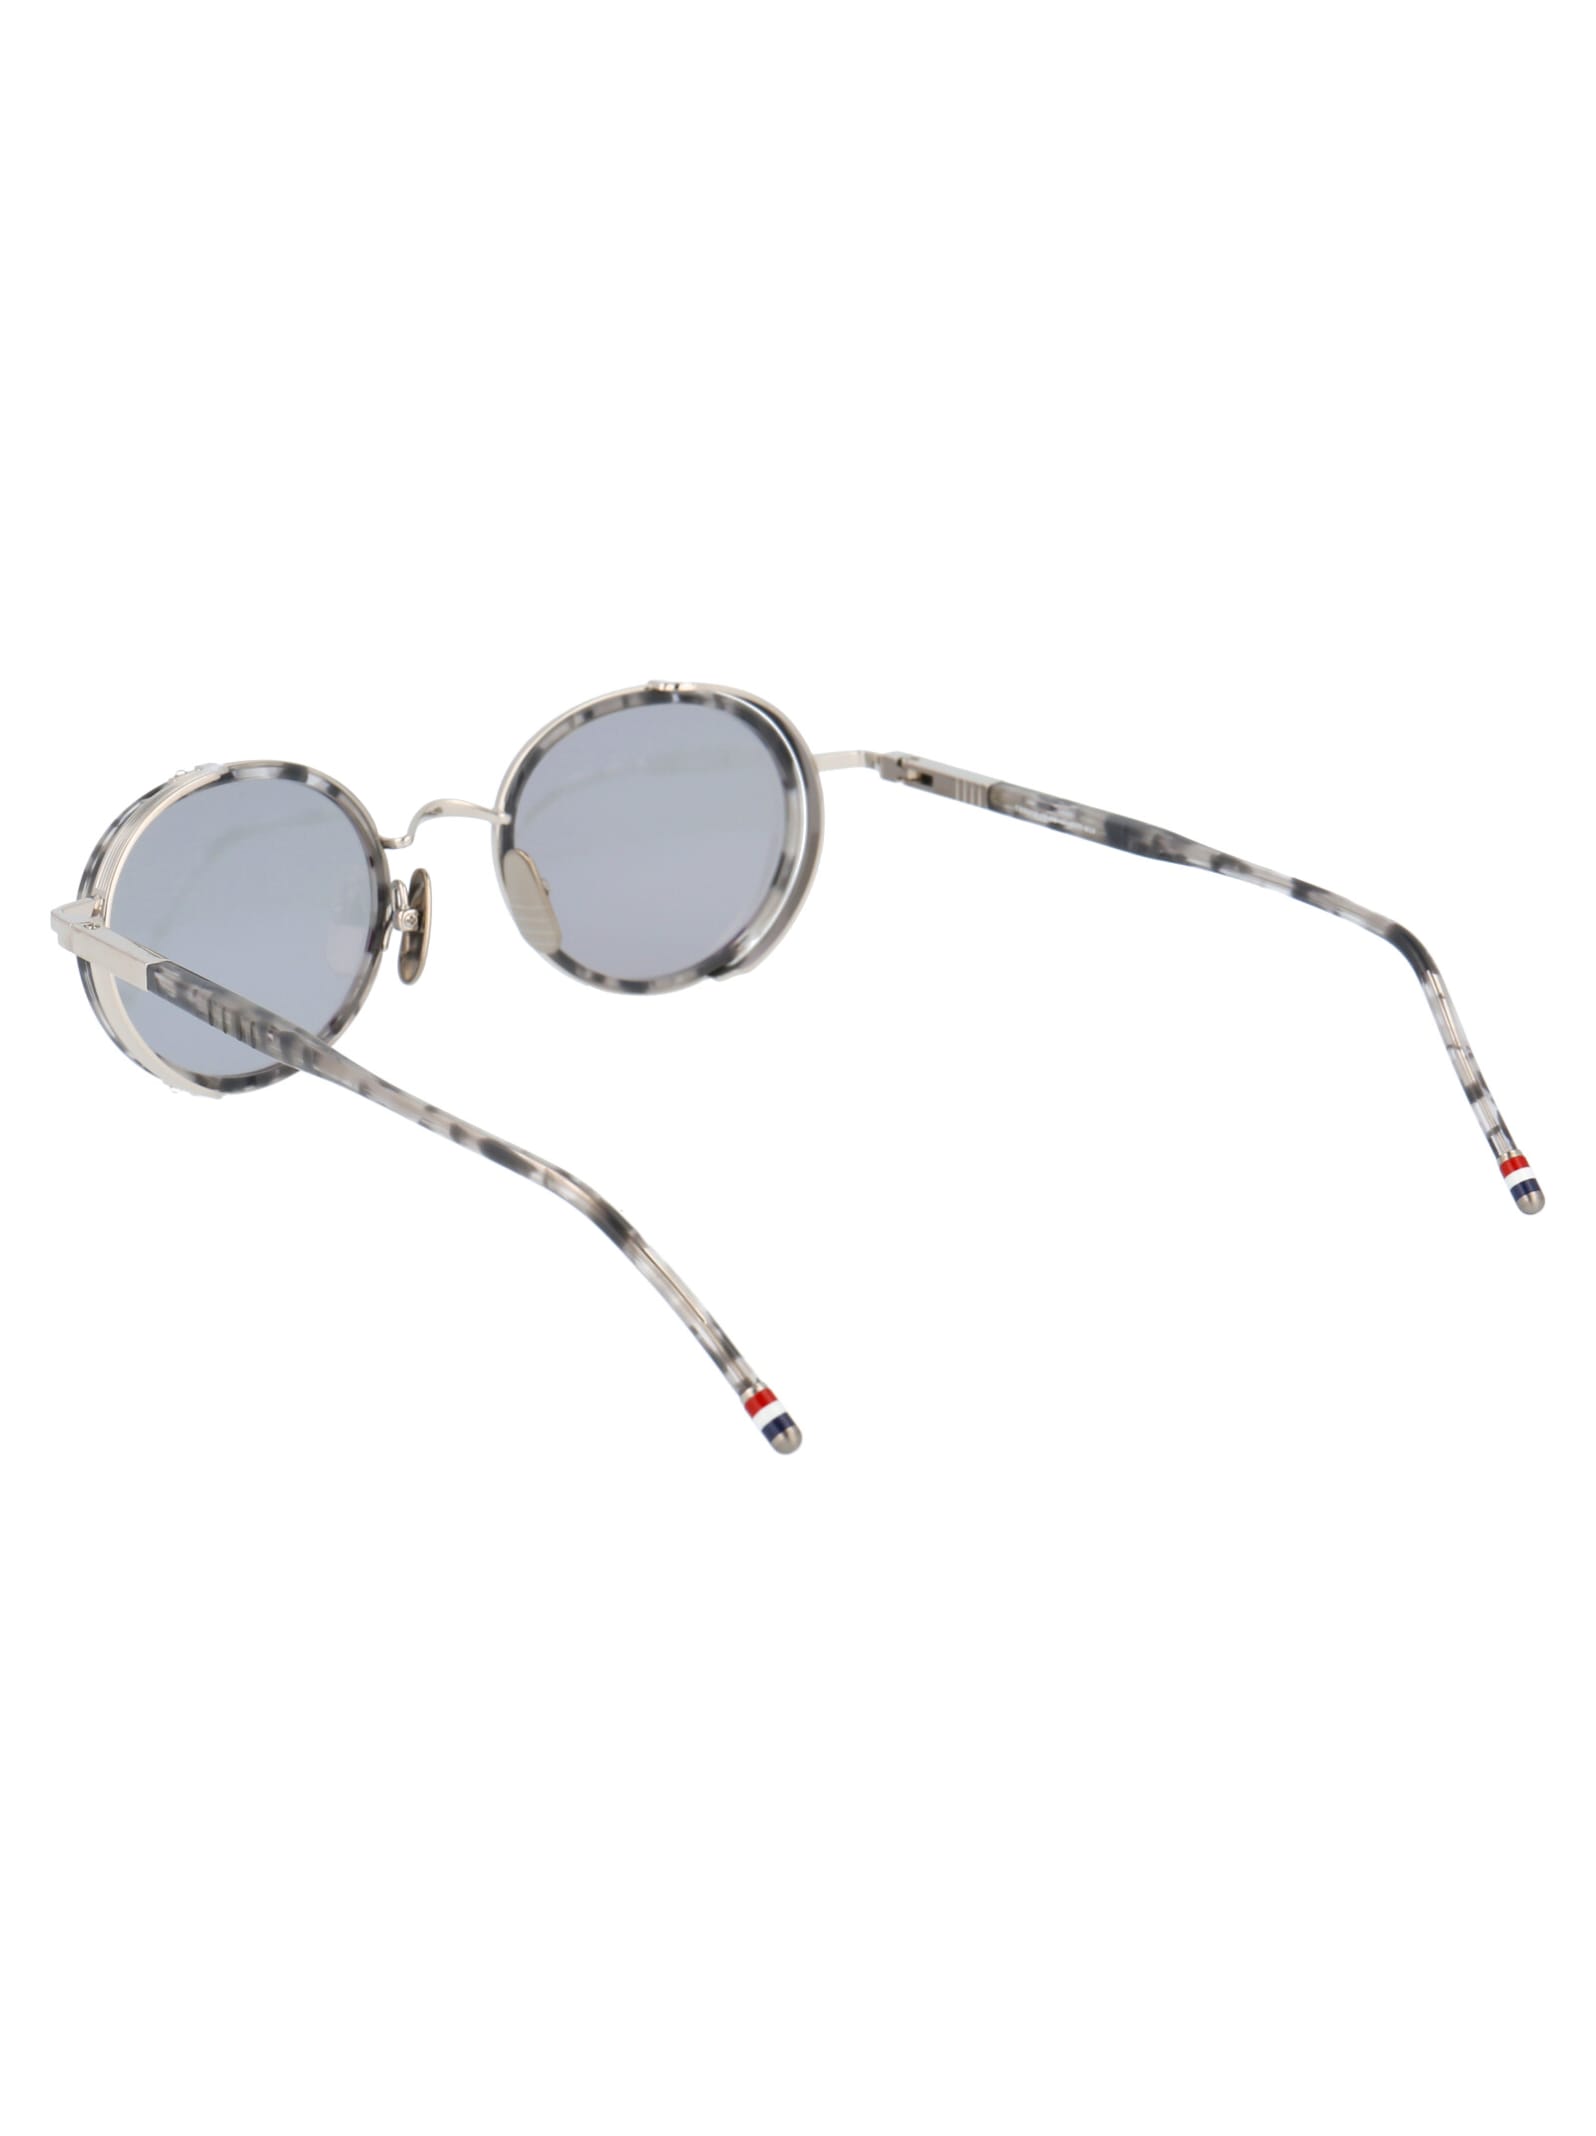 Shop Thom Browne Tb-813 Sunglasses In Grey Tortoise - Silver W/ Medium Grey - Silver Flash - Ar